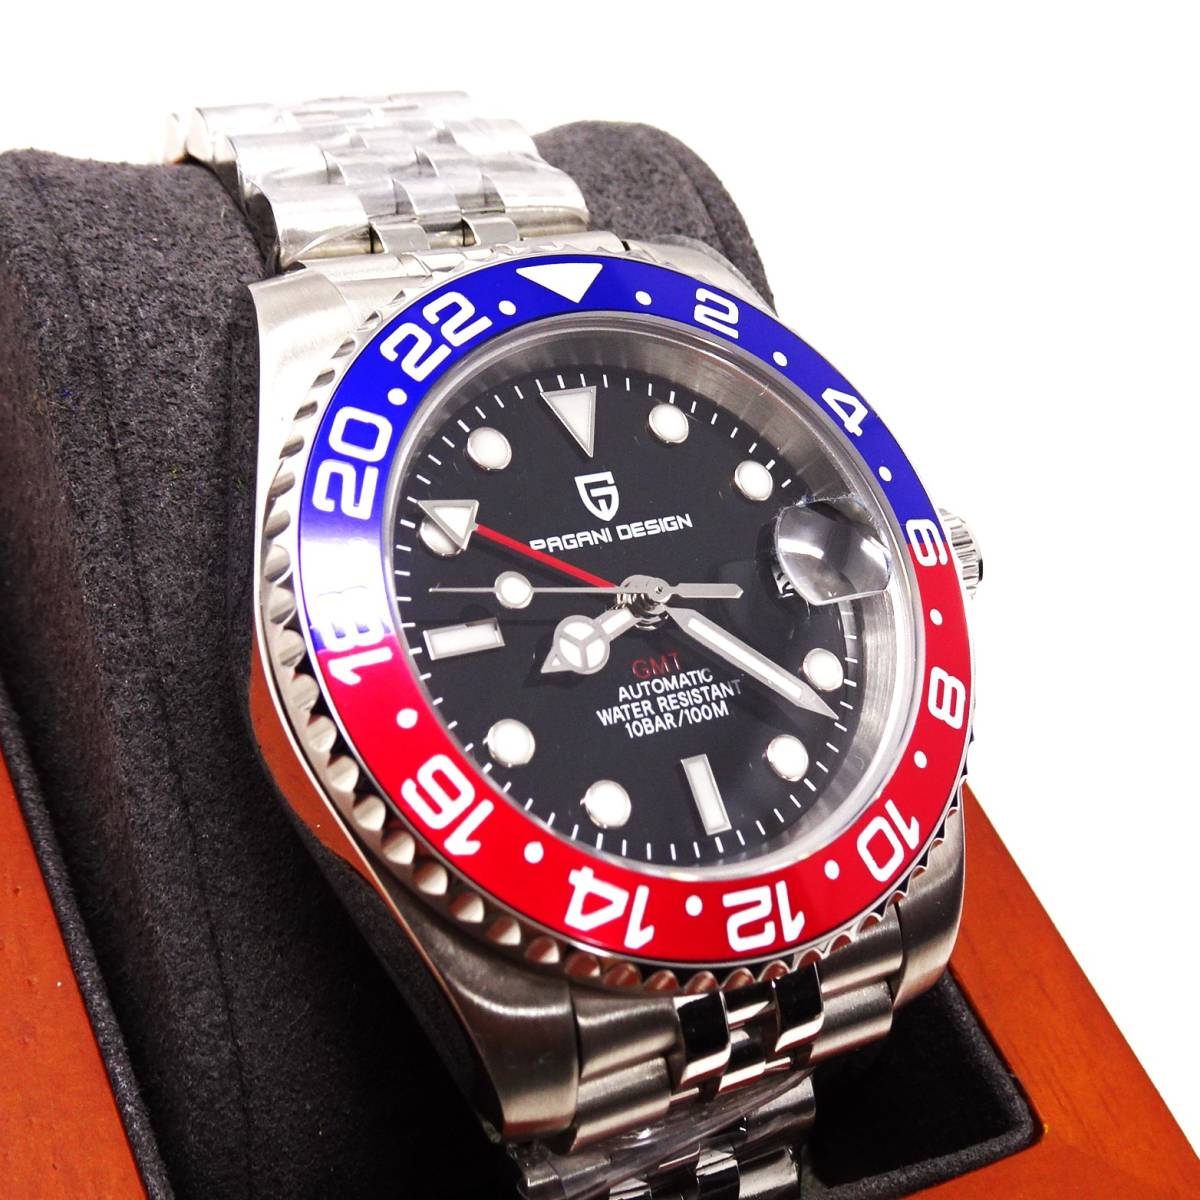 新品・パガーニデザインブランド・メンズ・機械式腕時計 ・GMT針オマージュウオッチ・ペプシベゼル・ジュビリーメタルストラップPD-1662_画像2